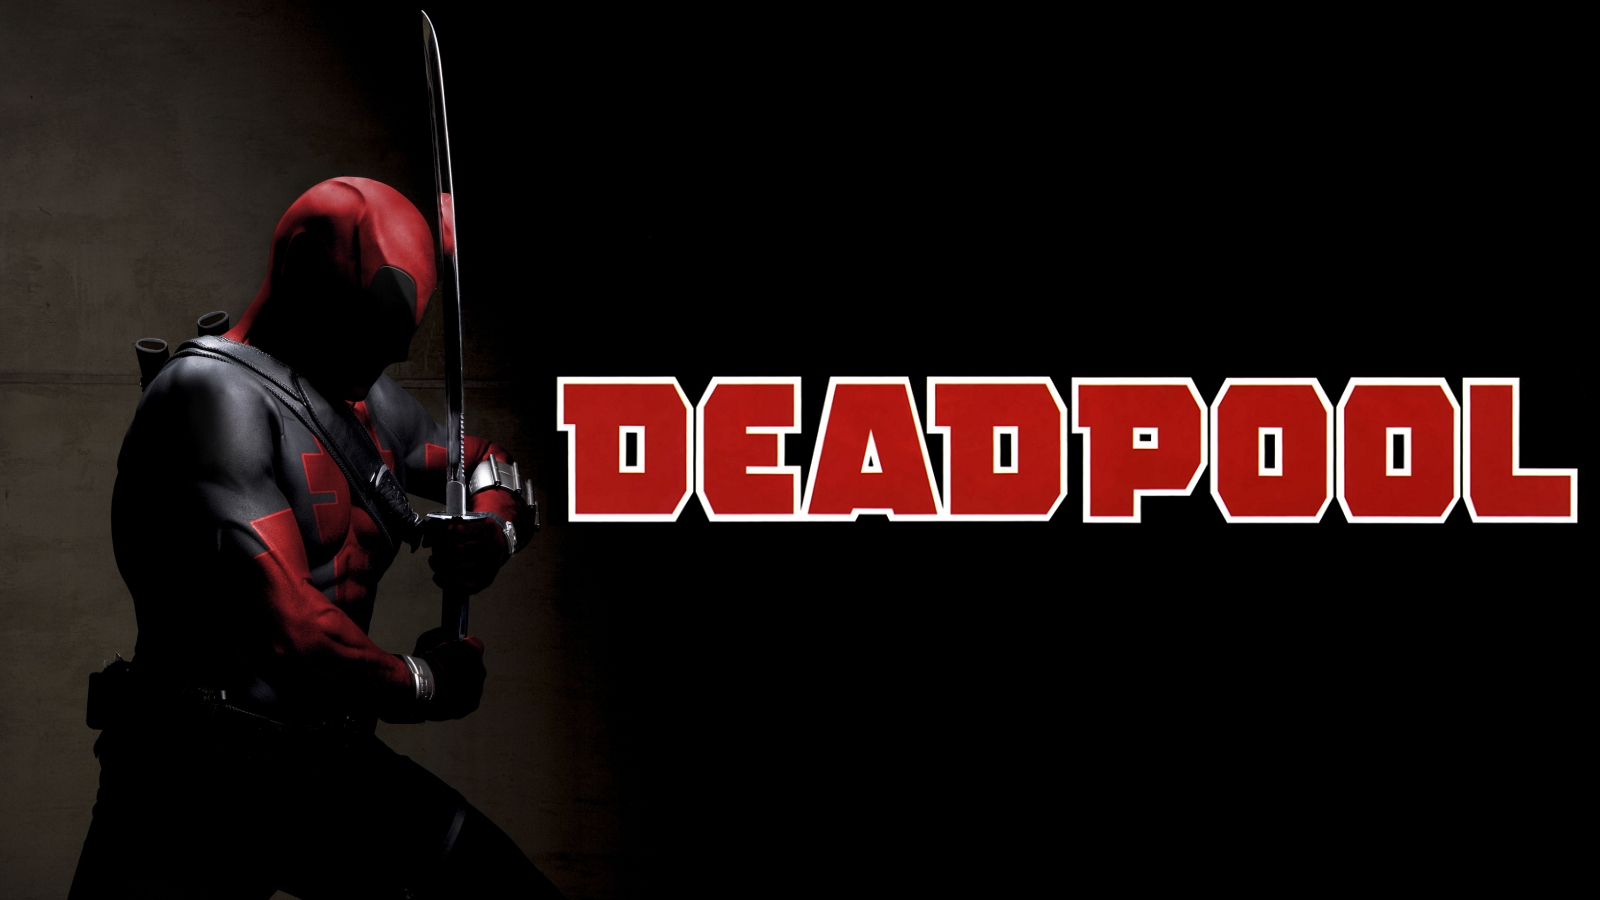 Deadpool Hd Wallpapers Desktop - HD Wallpaper 